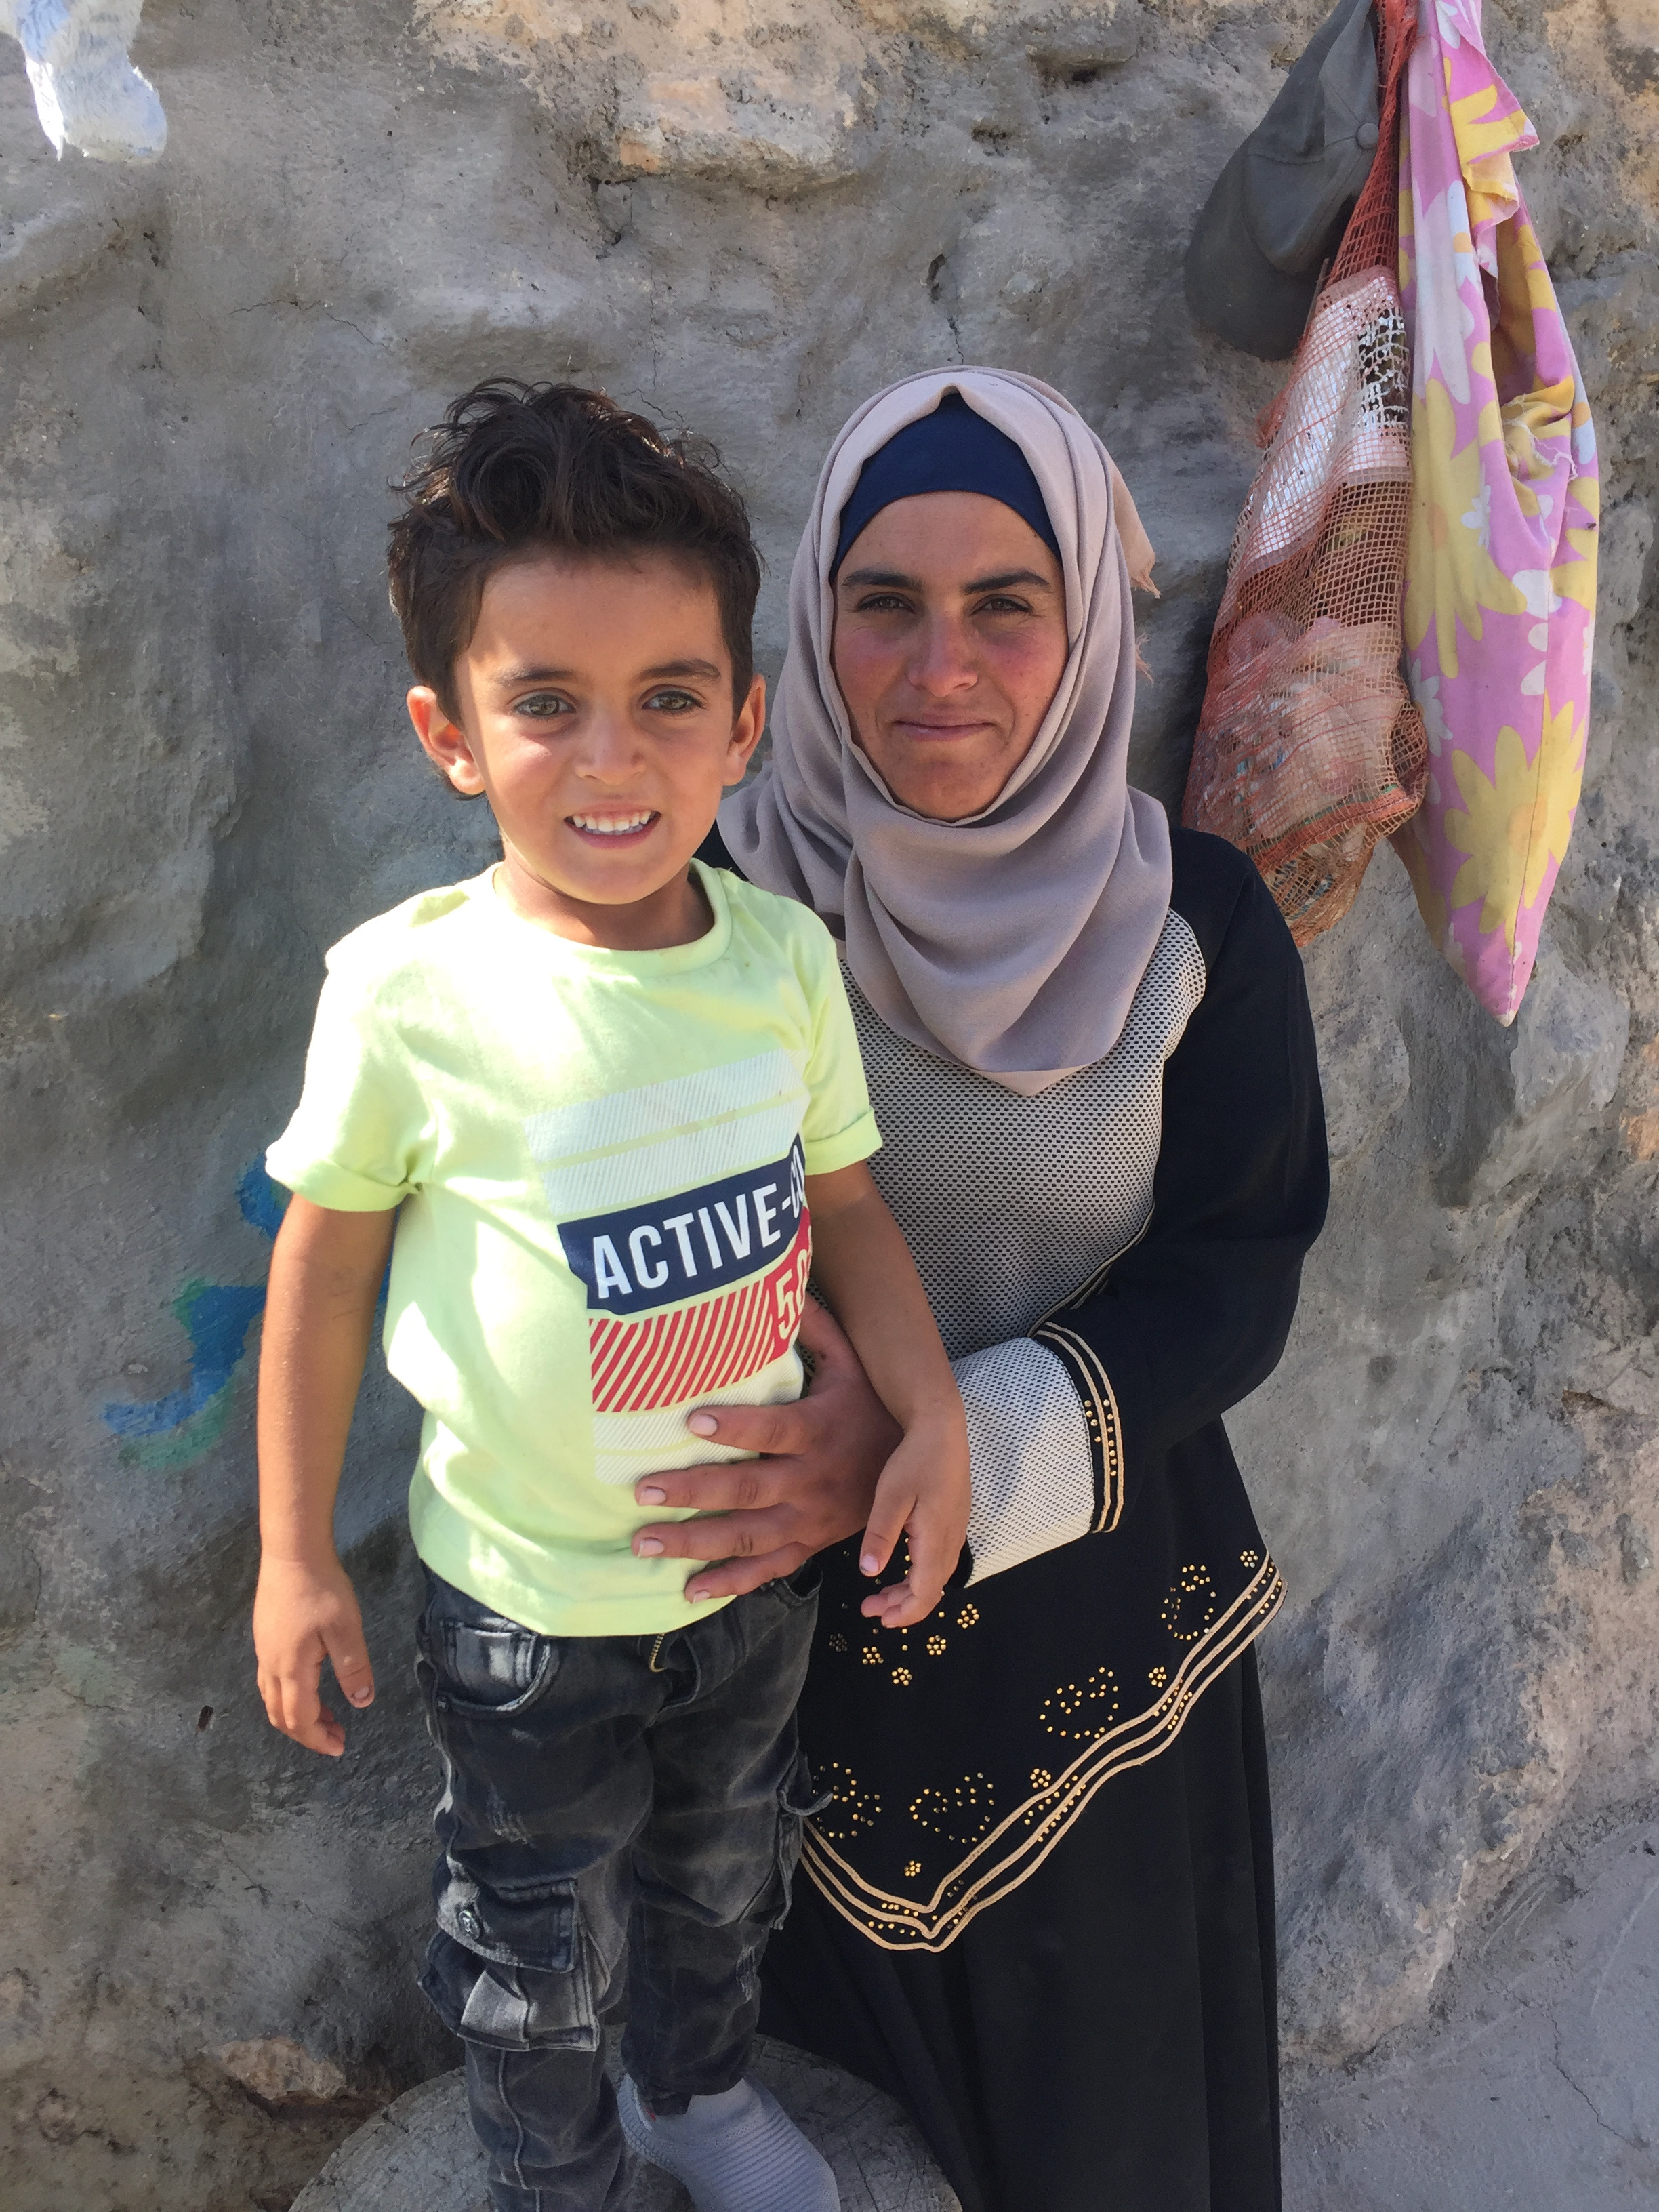 الطفل محمد بكر حسين (عمره ثلاثة أعوام) مع والدته براءة حمامدة أمام بيت العائلة في قرية المفقرة بالضفة الغربية.  Foto: Inge Günther